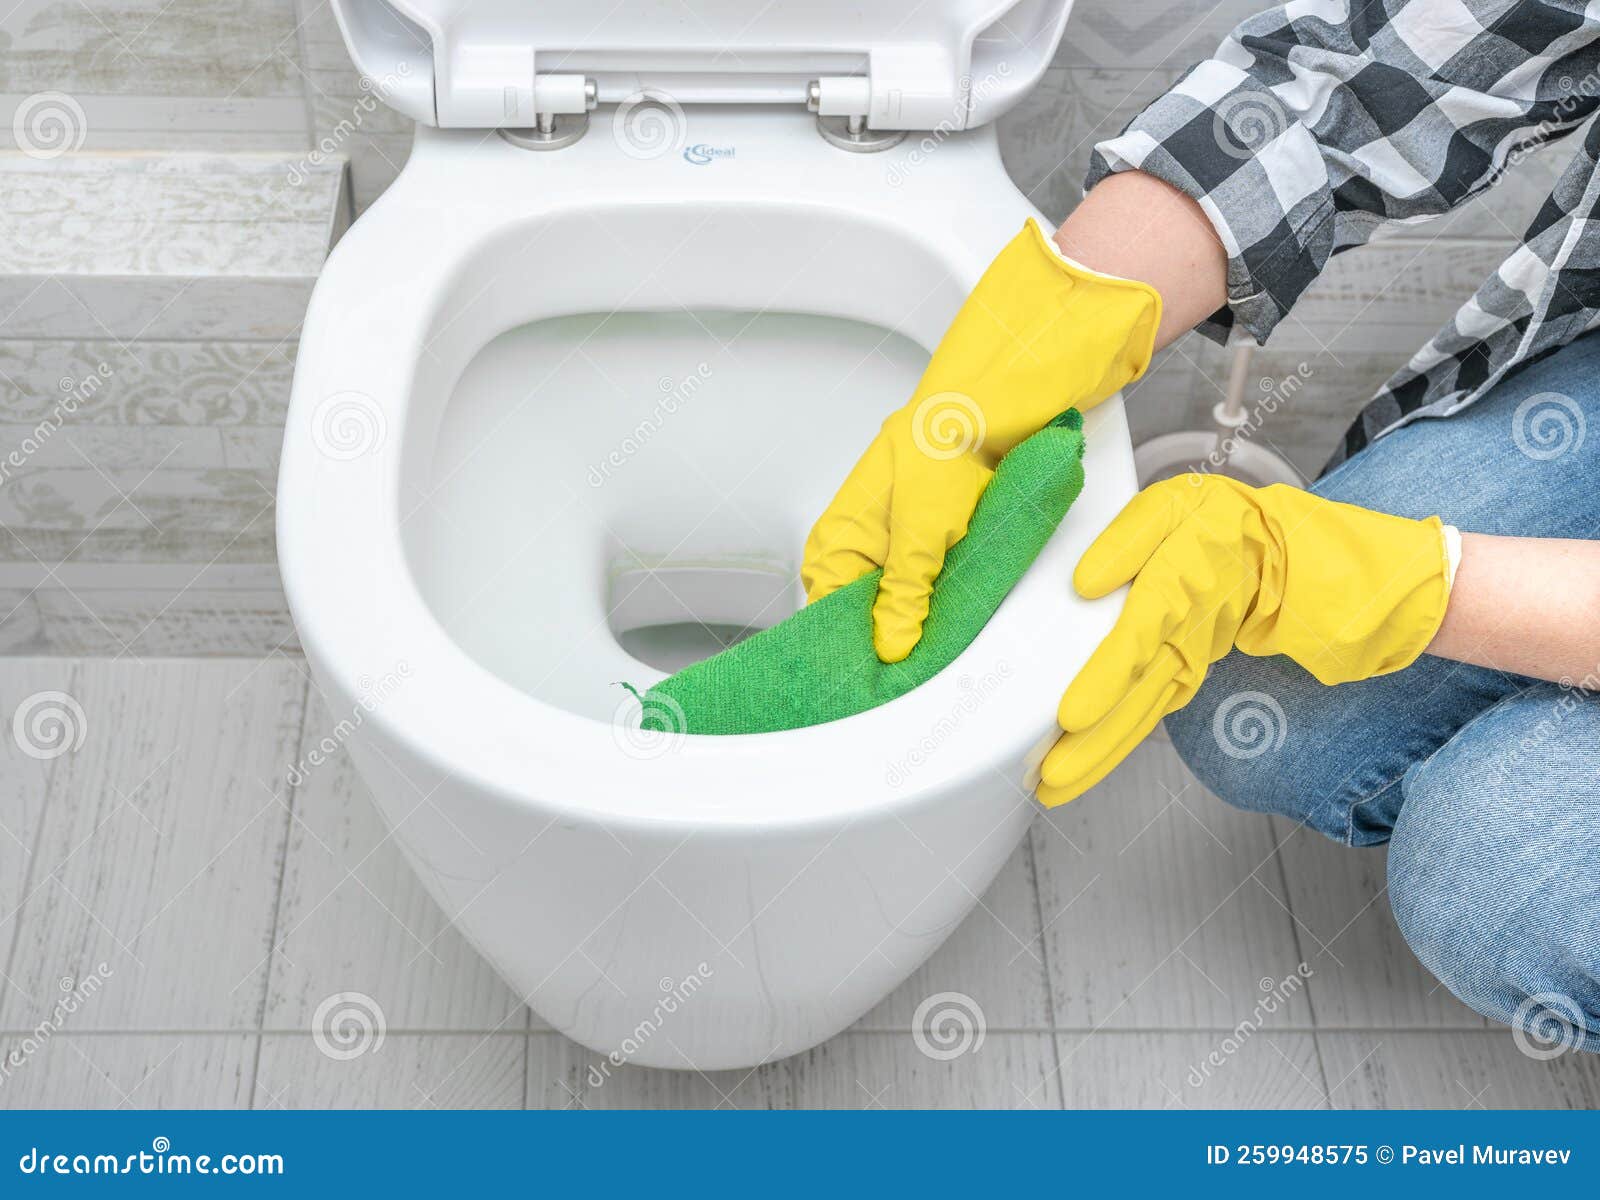 https://thumbs.dreamstime.com/z/nettoyage-en-profondeur-wc-toilette-nettoyante-professionnelle-brosse-les-toilettes-pour-la-propret%C3%A9-et-l-hygi%C3%A8ne-femme-de-259948575.jpg